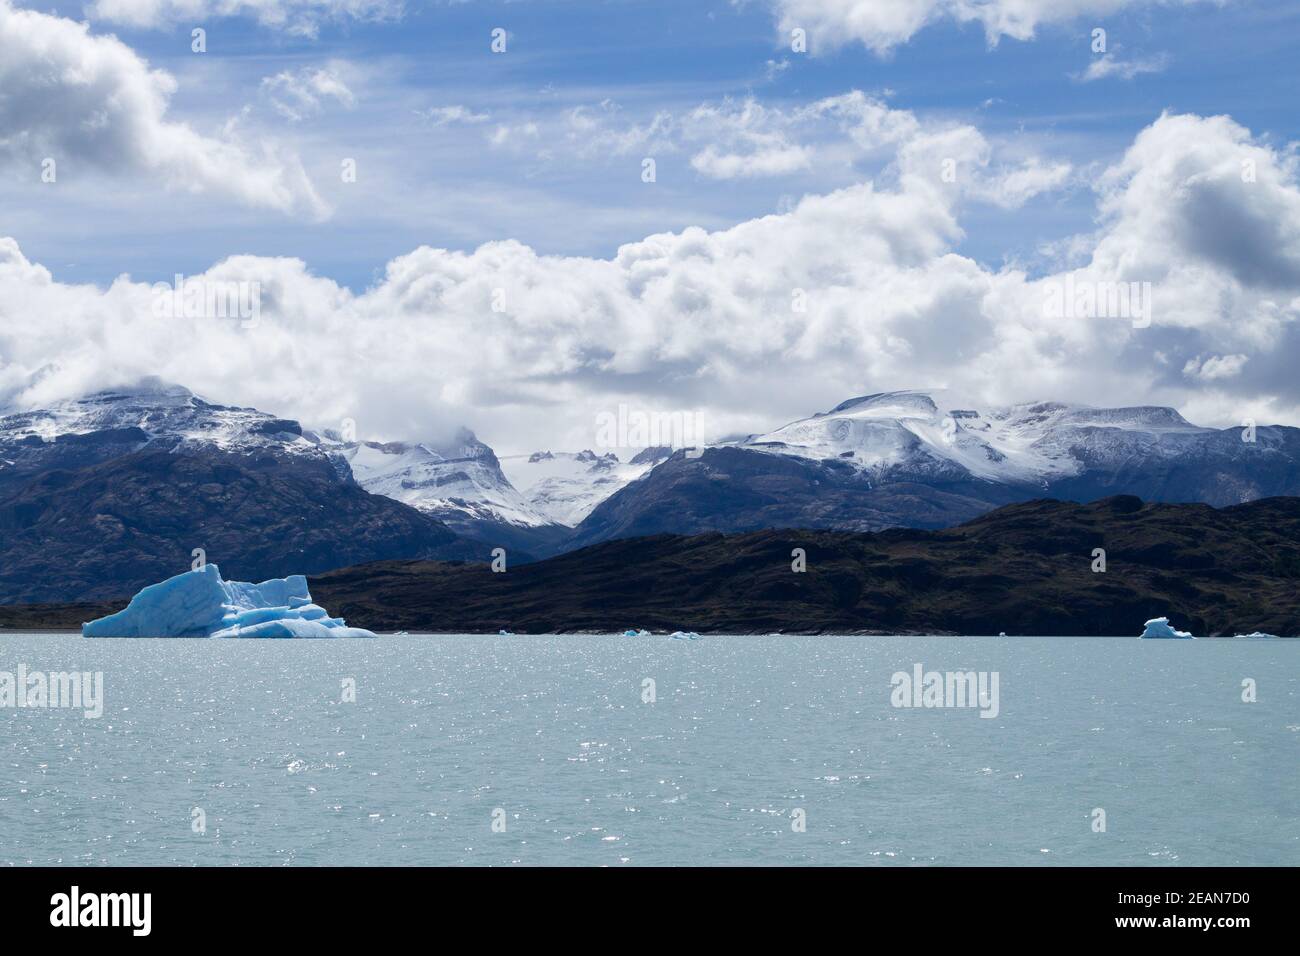 Icebergs floating on Argentino lake, Patagonia landscape, Argentina Stock Photo